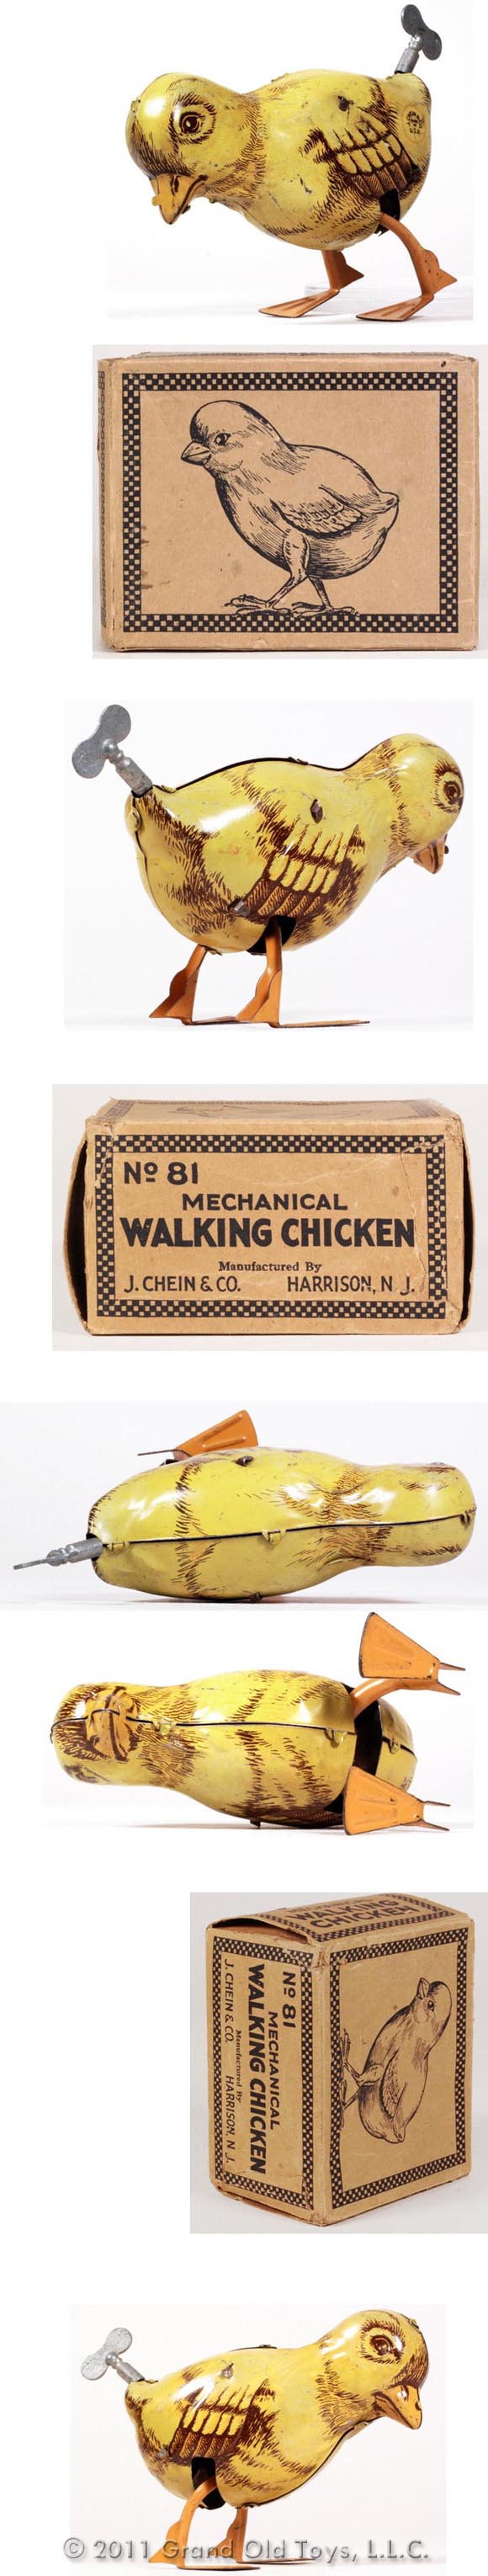 c.1932 Chein Mechanical Walking Chicken In Original Box